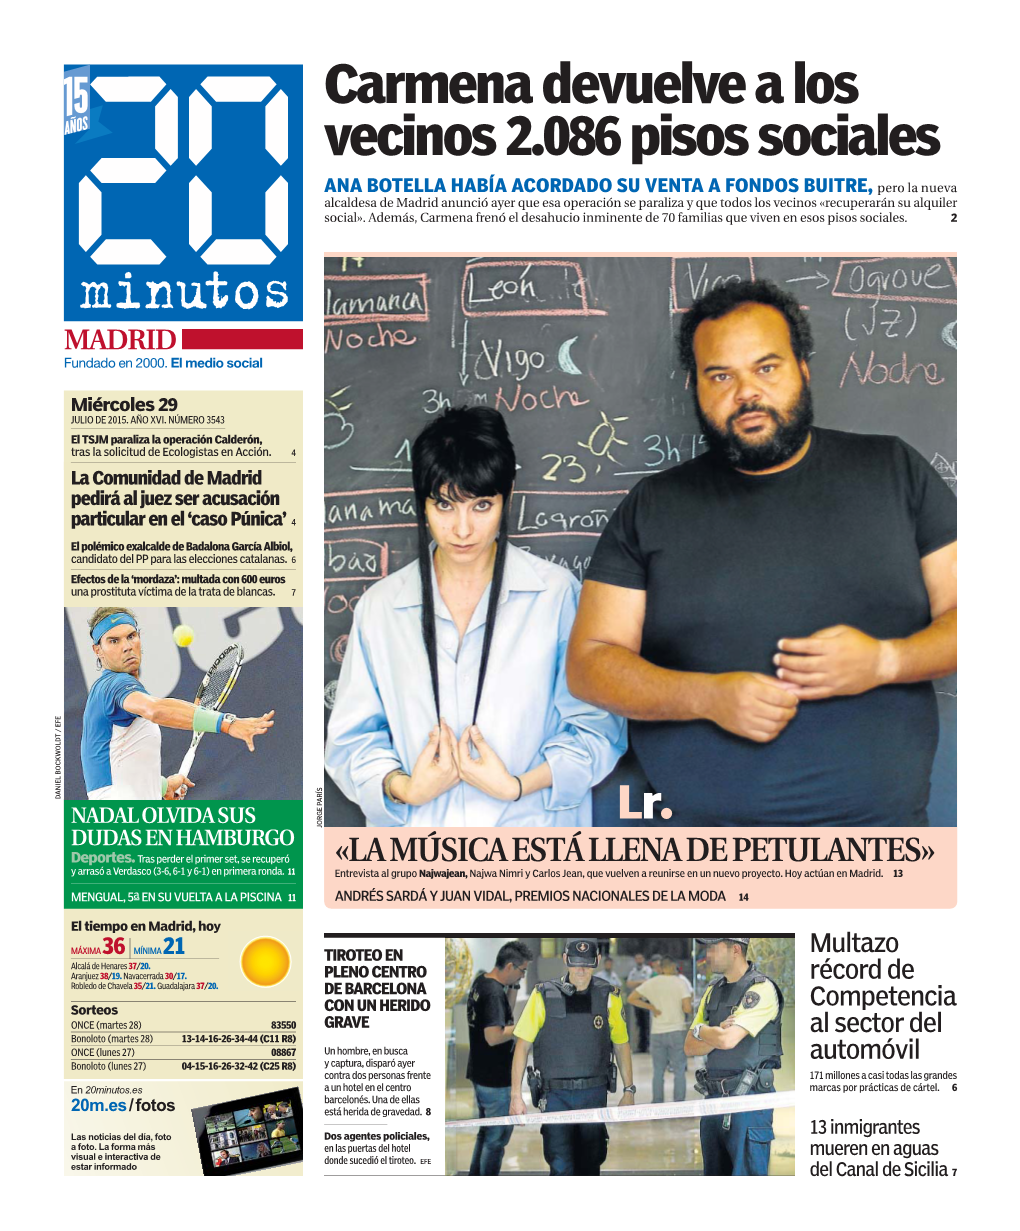 Carmena Devuelve a Los Vecinos 2.086 Pisos Sociales